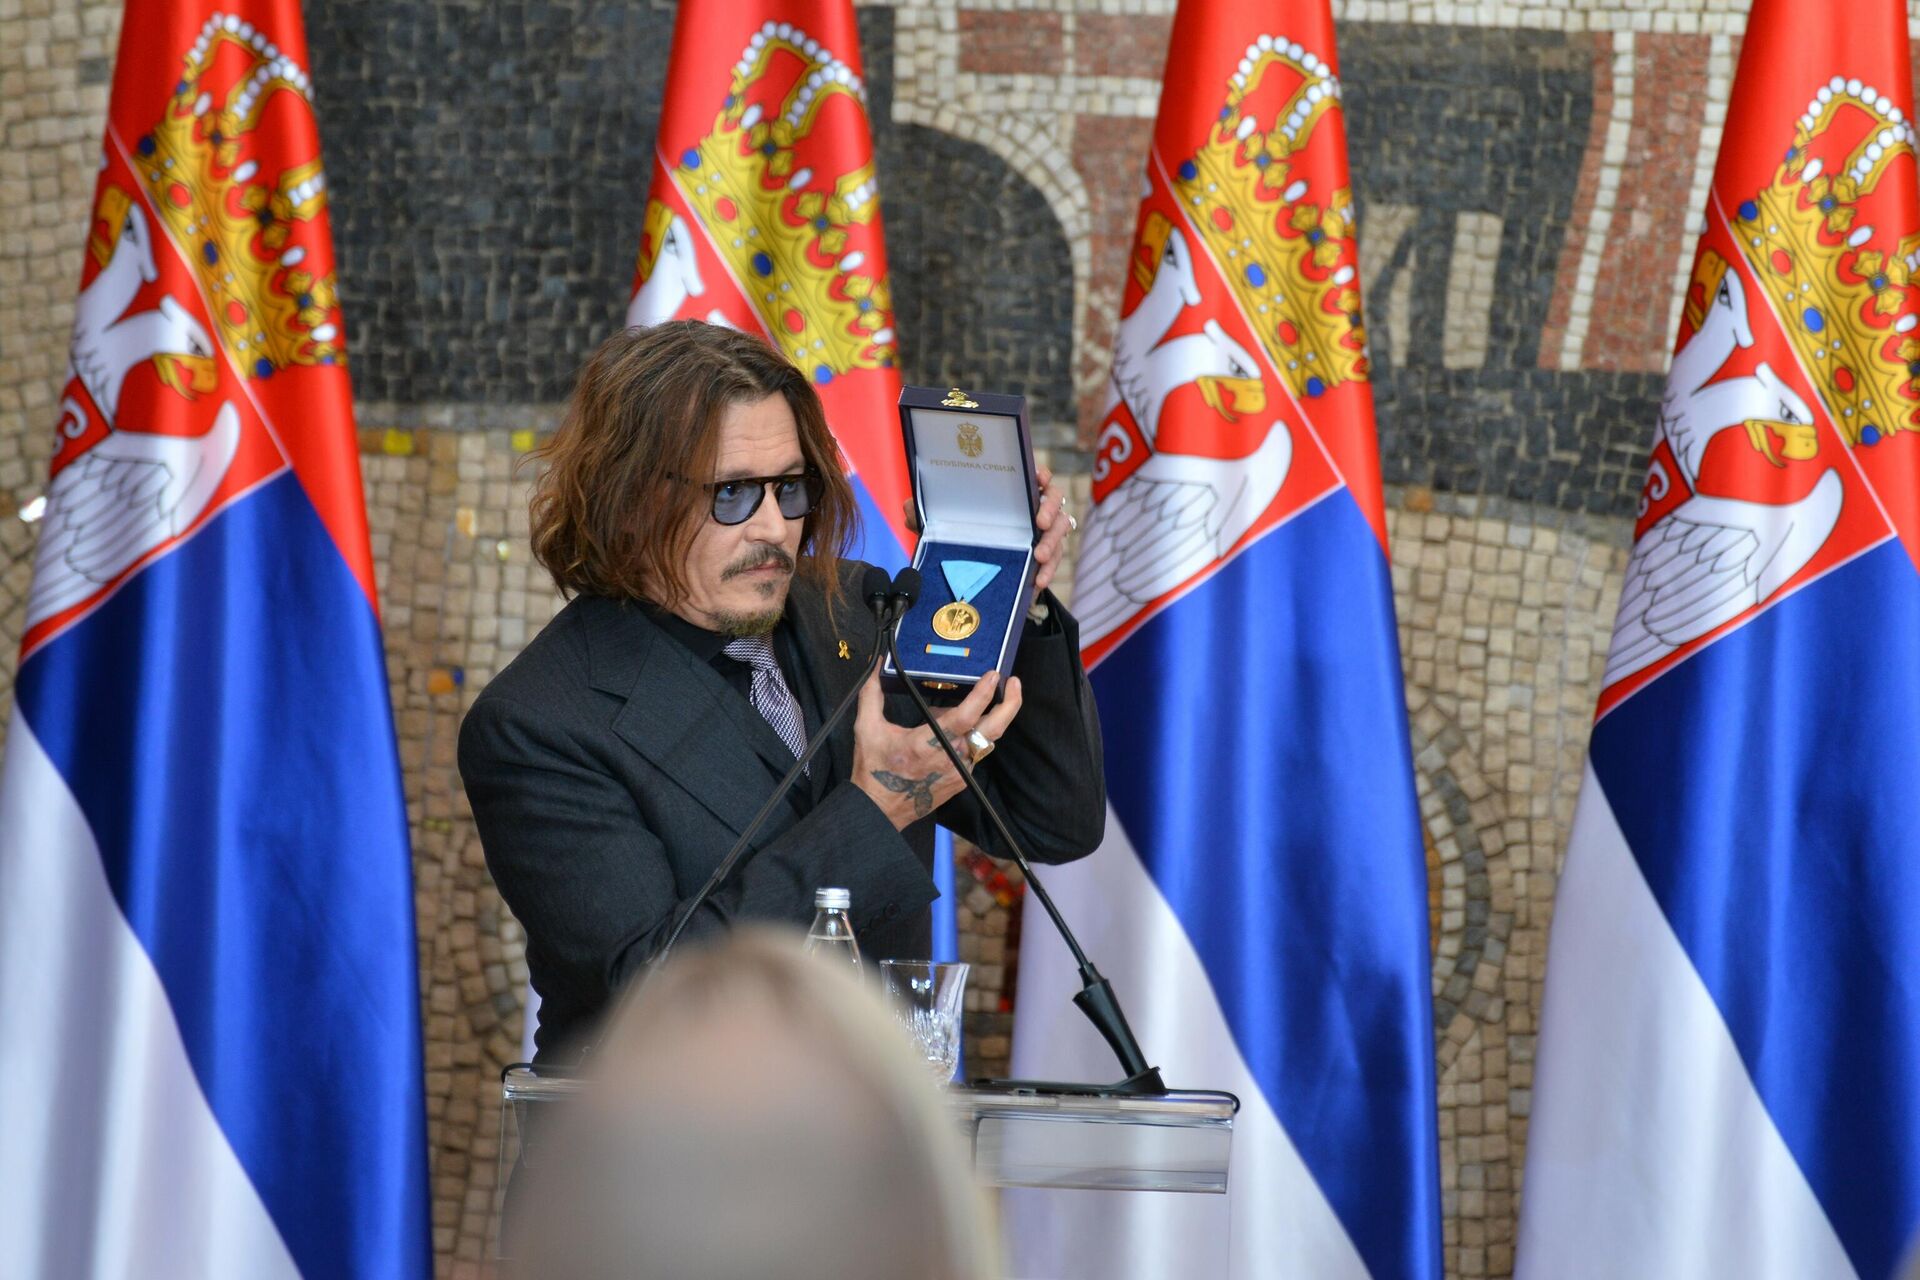 Џони Деп је одликован Златном медаљом за заслуге Републике Србије поводом Дана државности - Sputnik Србија, 1920, 15.02.2022